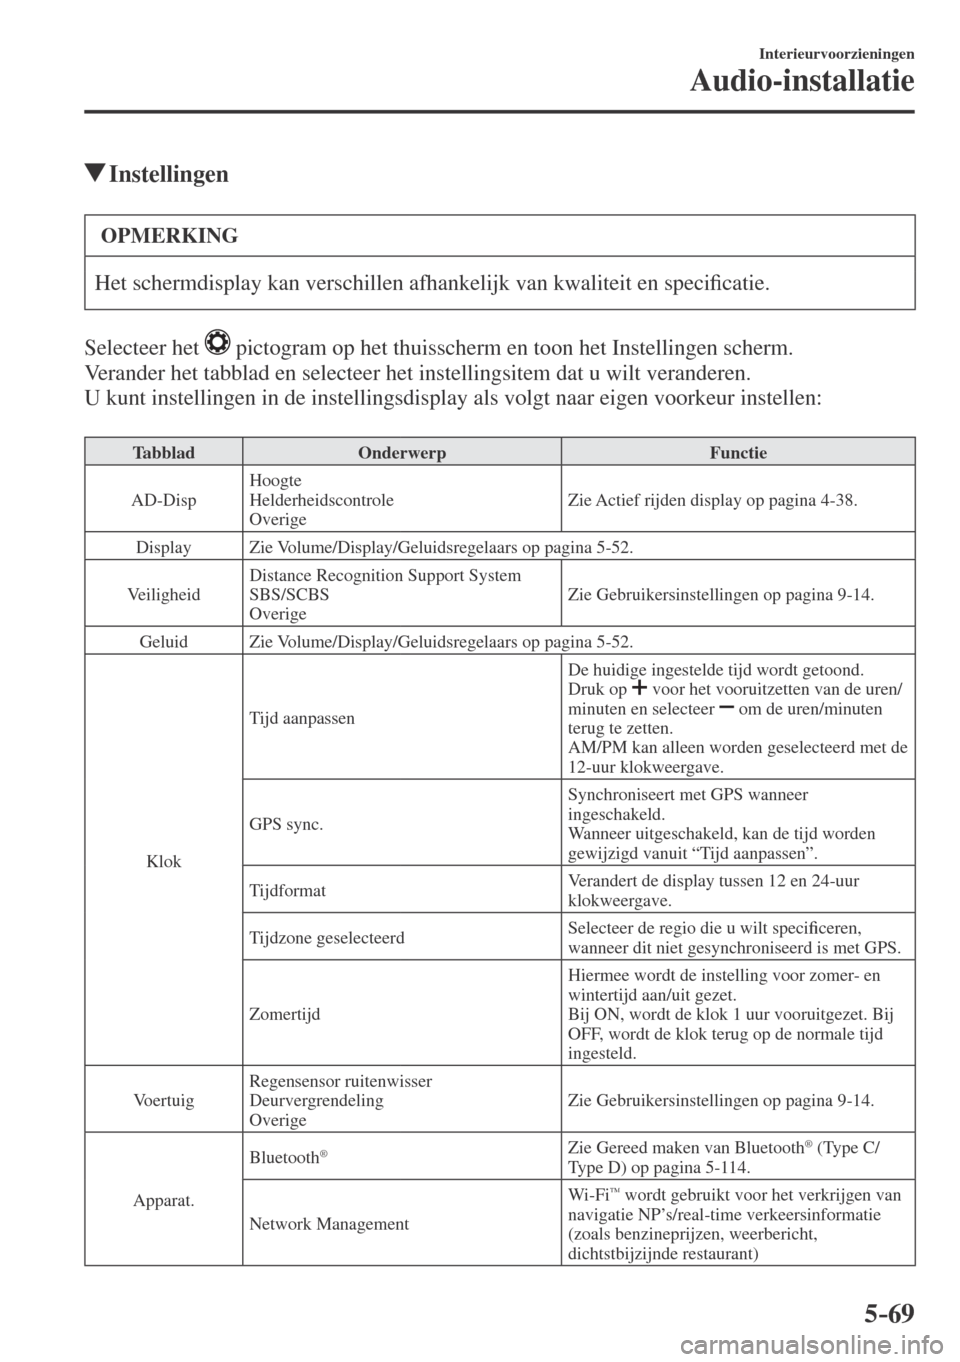 MAZDA MODEL CX-3 2016  Handleiding (in Dutch) 5–69
Interieurvoorzieningen
Audio-installatie
          Instellingen
 OPMERKING
 Het schermdisplay kan verschillen afhankelijk van kwaliteit en speci�¿ catie. 
  Selecteer  het   
  pictogram op he